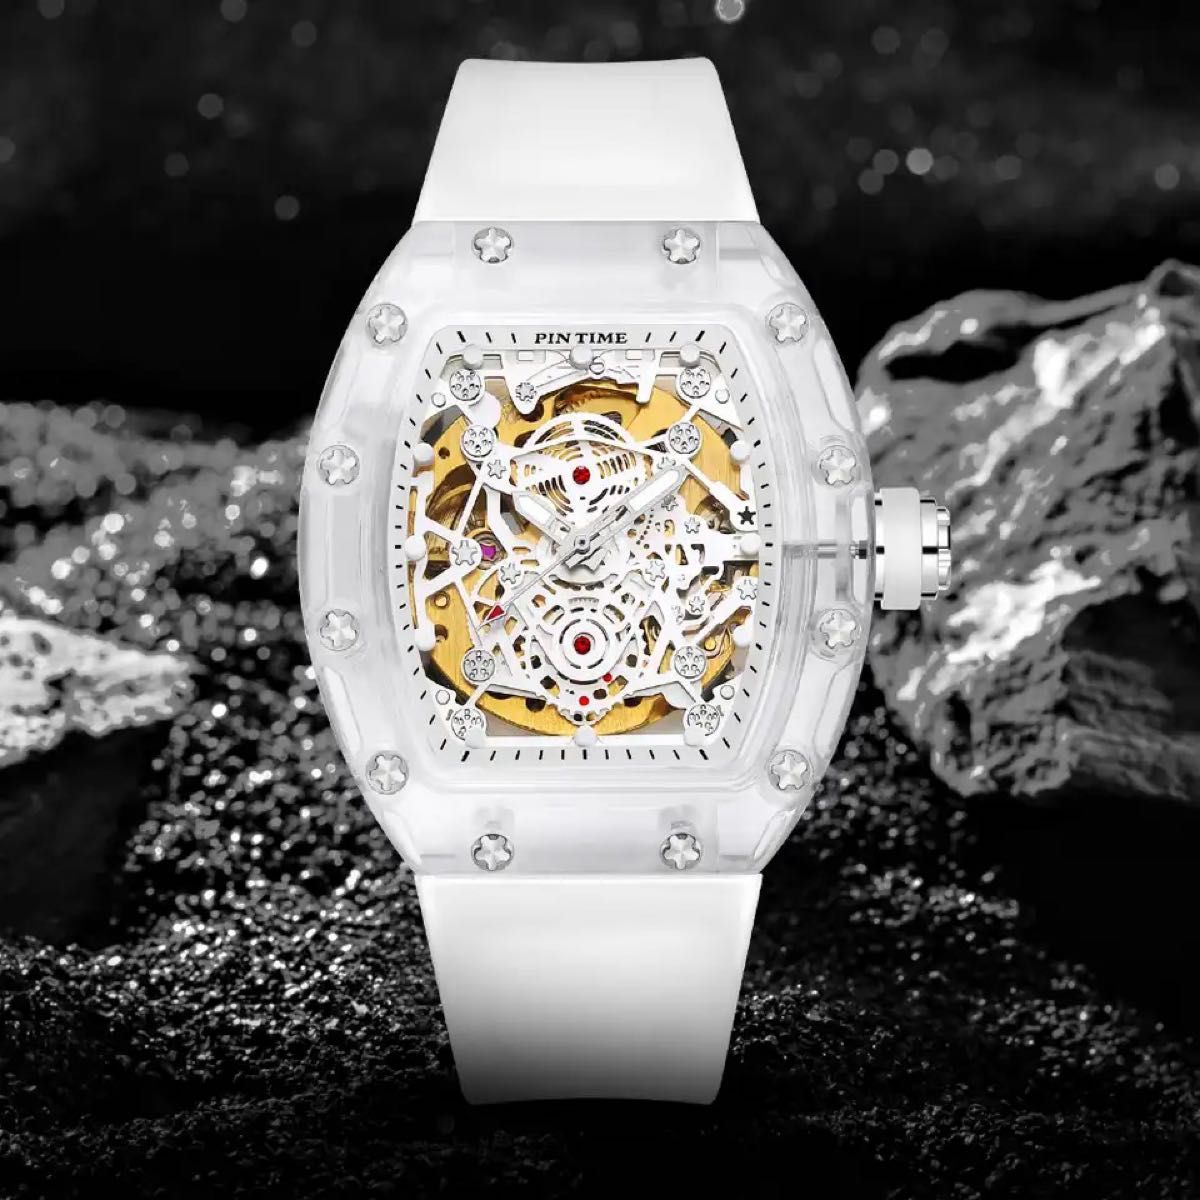 【日本未発売 アメリカ価格20,000円】PINTIME リシャール トゥールビヨンオマージュ ブランド腕時計 高級腕時計